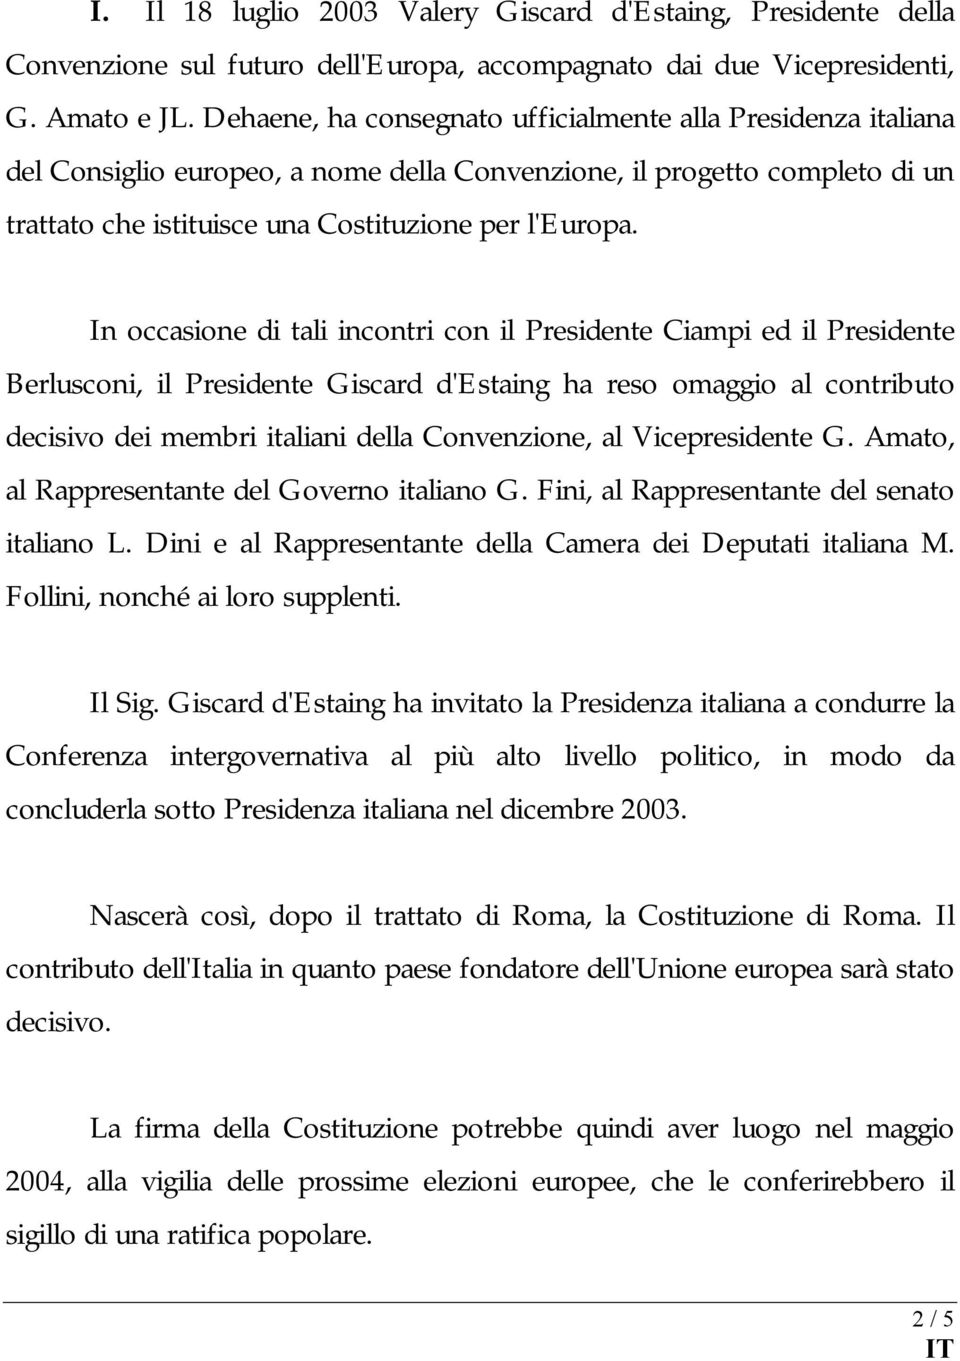 In occasione di tali incontri con il Presidente Ciampi ed il Presidente Berlusconi, il Presidente Giscard d'estaing ha reso omaggio al contributo decisivo dei membri italiani della Convenzione, al